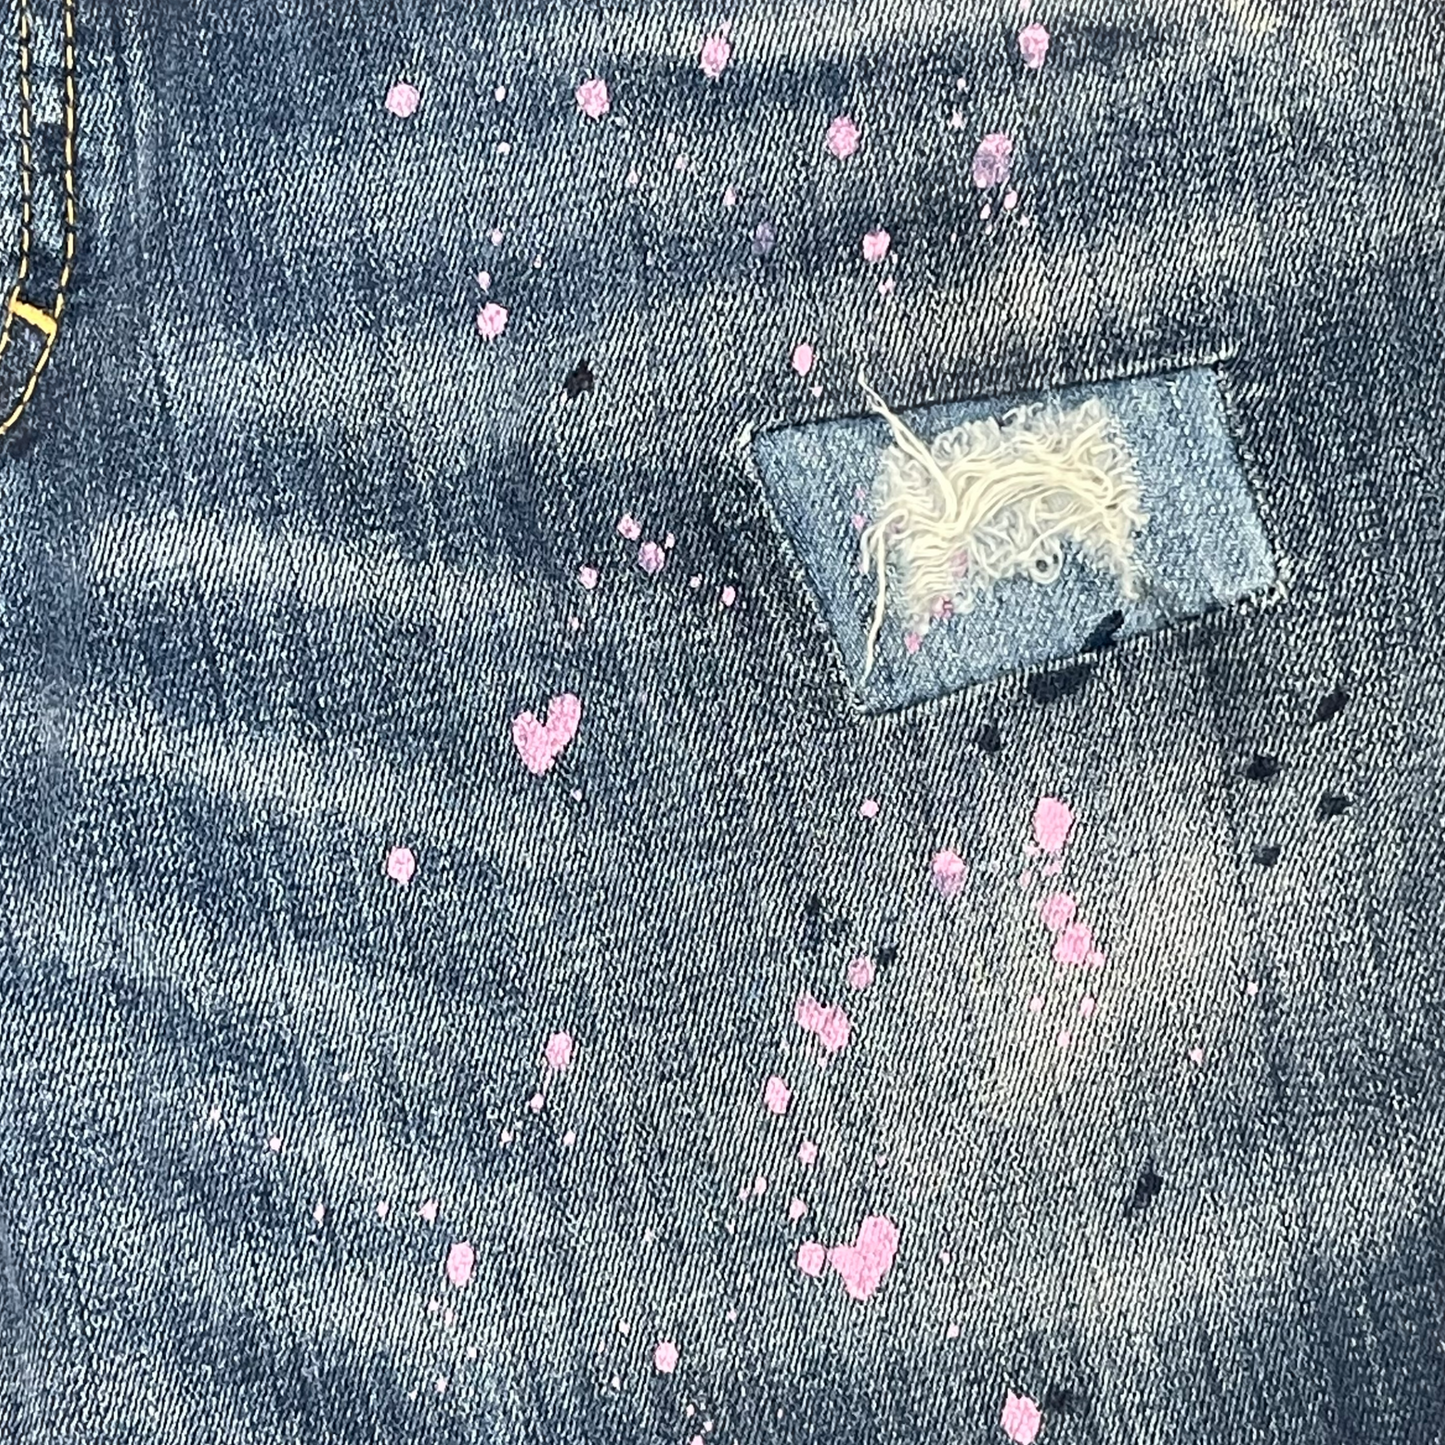 Dsquared Paint Splatter Distress Jeans